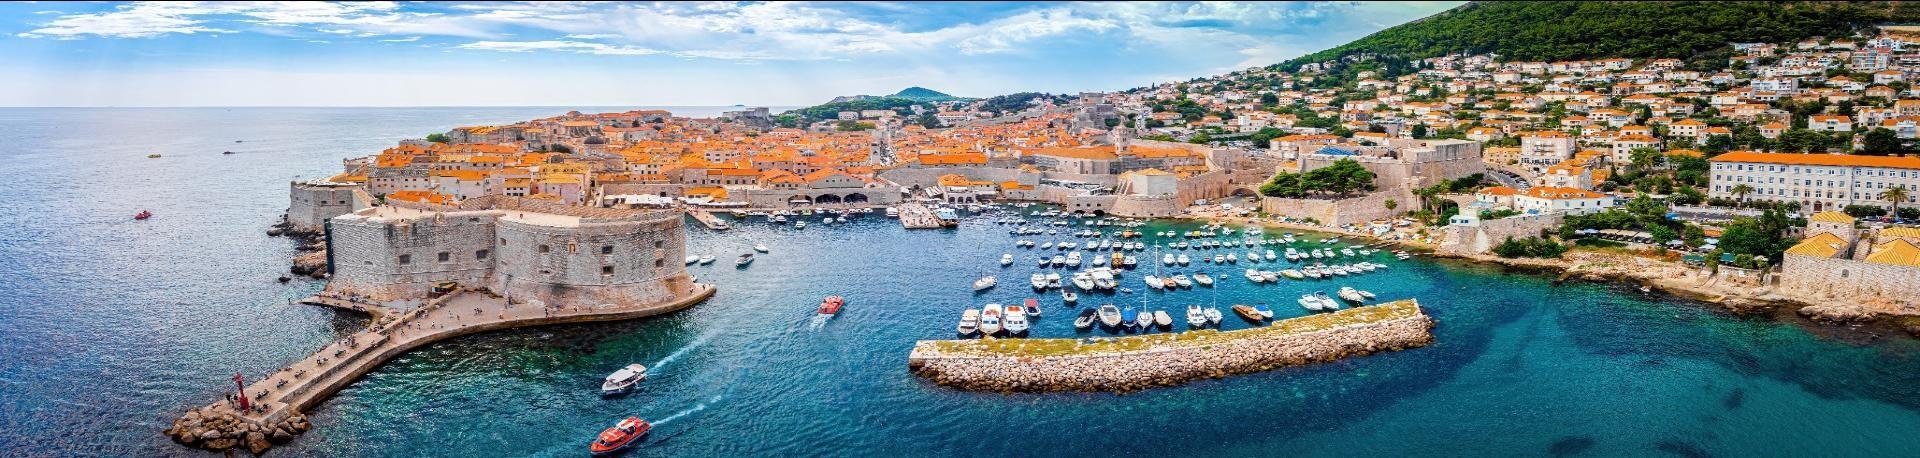 Dubrovnik, een stad in het zuiden van Kroatië